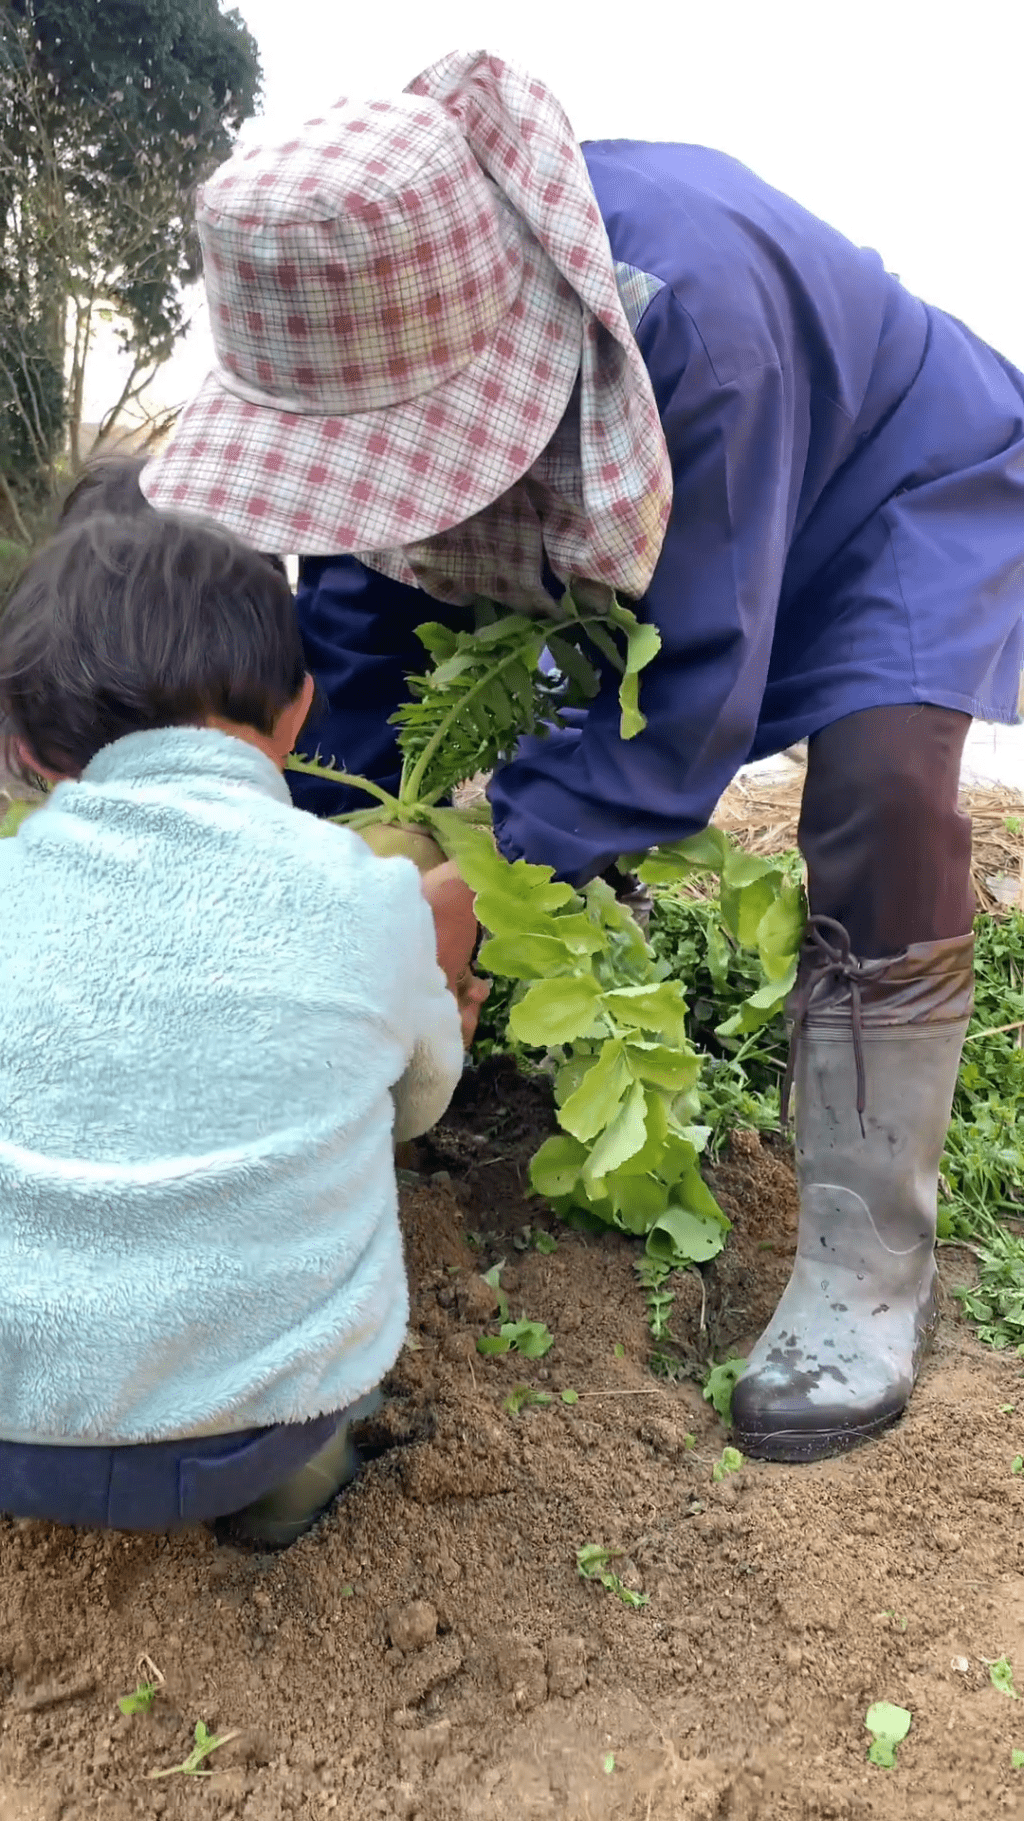 影片看到一名農夫與兩名小孩，正在掘出「蘿蔔腳」。